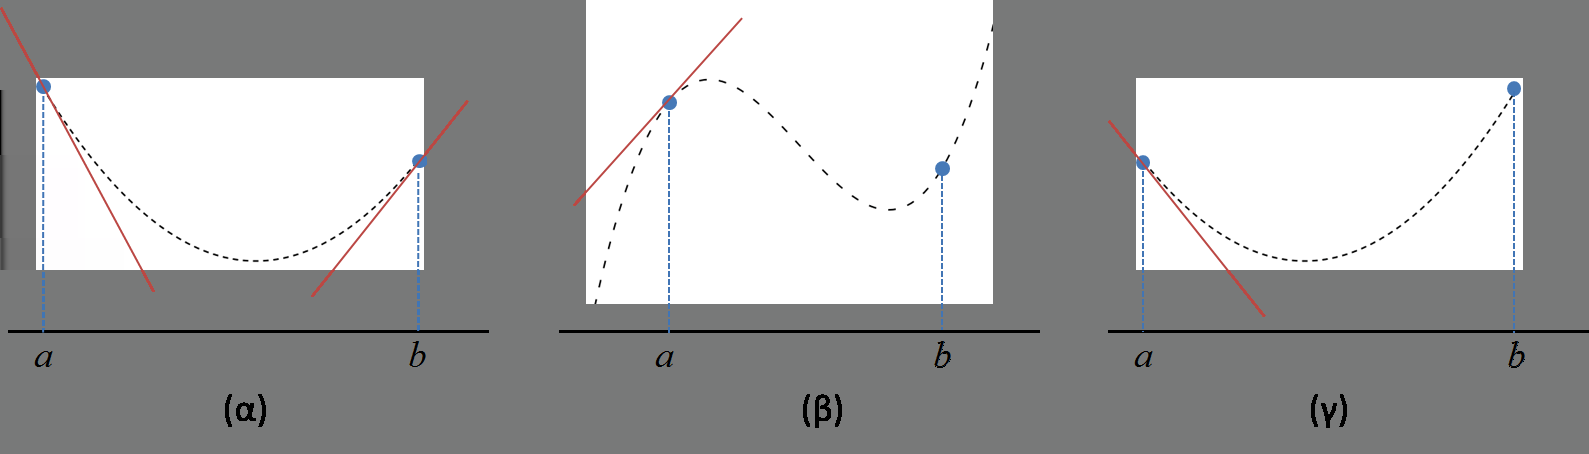 Σχήμα 2.6: Οι διαφορετικοί τρόποι ορισμού διαστήματος αβεβαιότητας με χρήση παραγώγων. είναι σχεδόν σταθερός για μεγάλα N και i όχι πολύ κοντά στο N. Η υπόθεση Δ αν εφαρμοστεί στην (2.